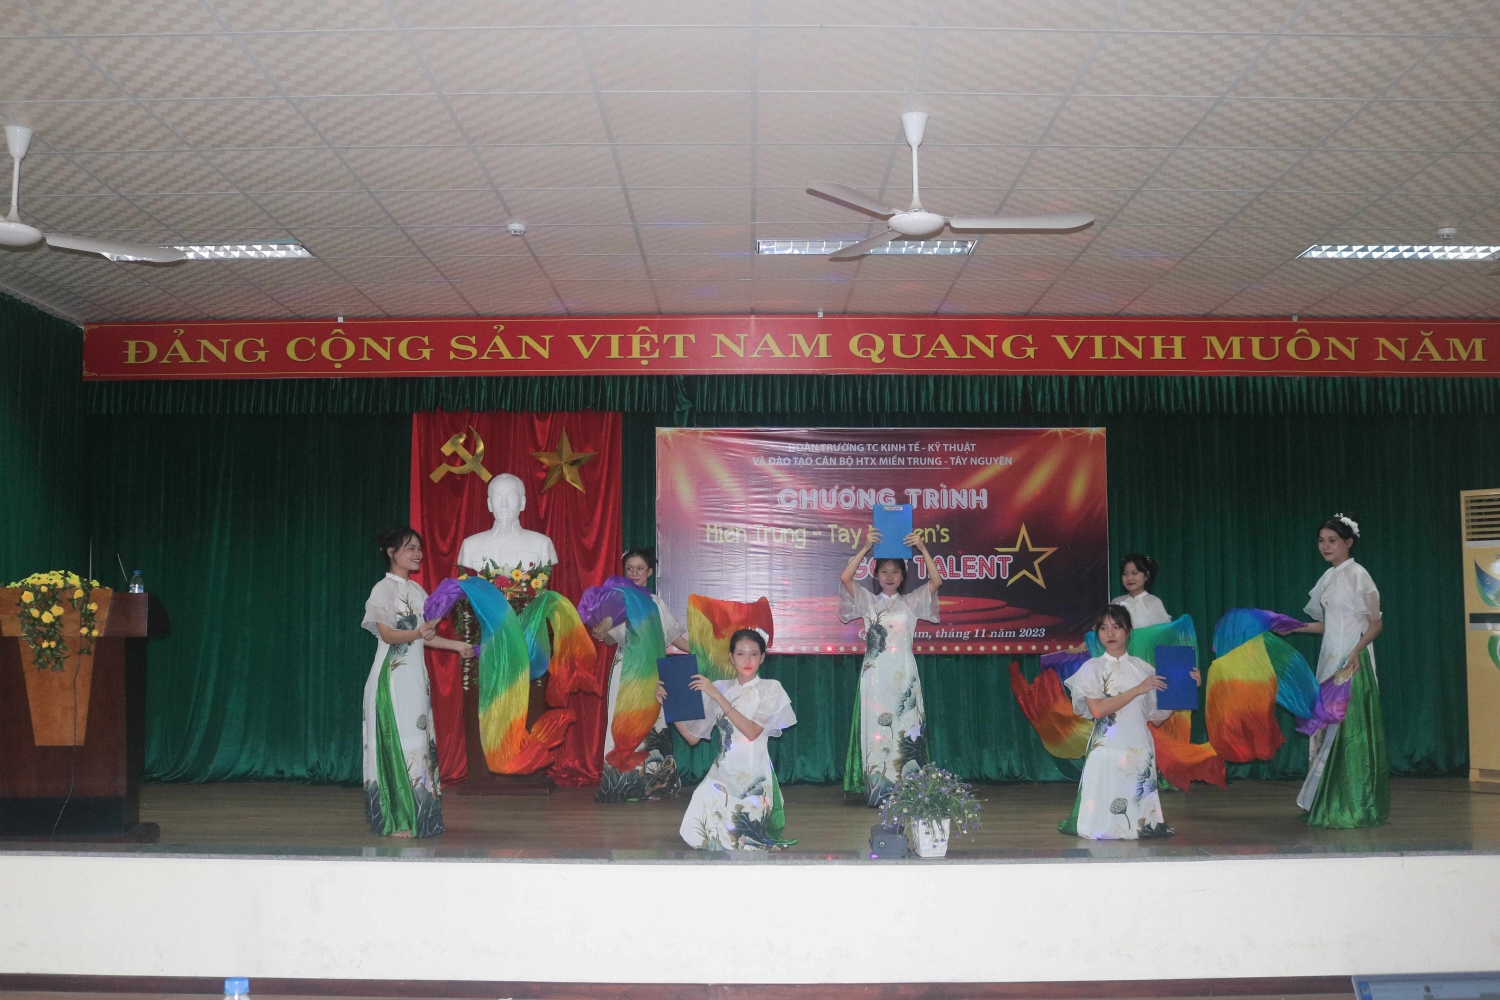 Đoàn trường Trung cấp Kinh tế - Kỹ thuật và Đào tạo Cán bộ HTX Miền Trung -Tây Nguyên tổ chức cuộc thi " Miền Trung-Tây Nguyên's Got Talent" chào mừng 41 năm ngày Nhà giáo Việt Nam (20/11/1982-20/11/2023